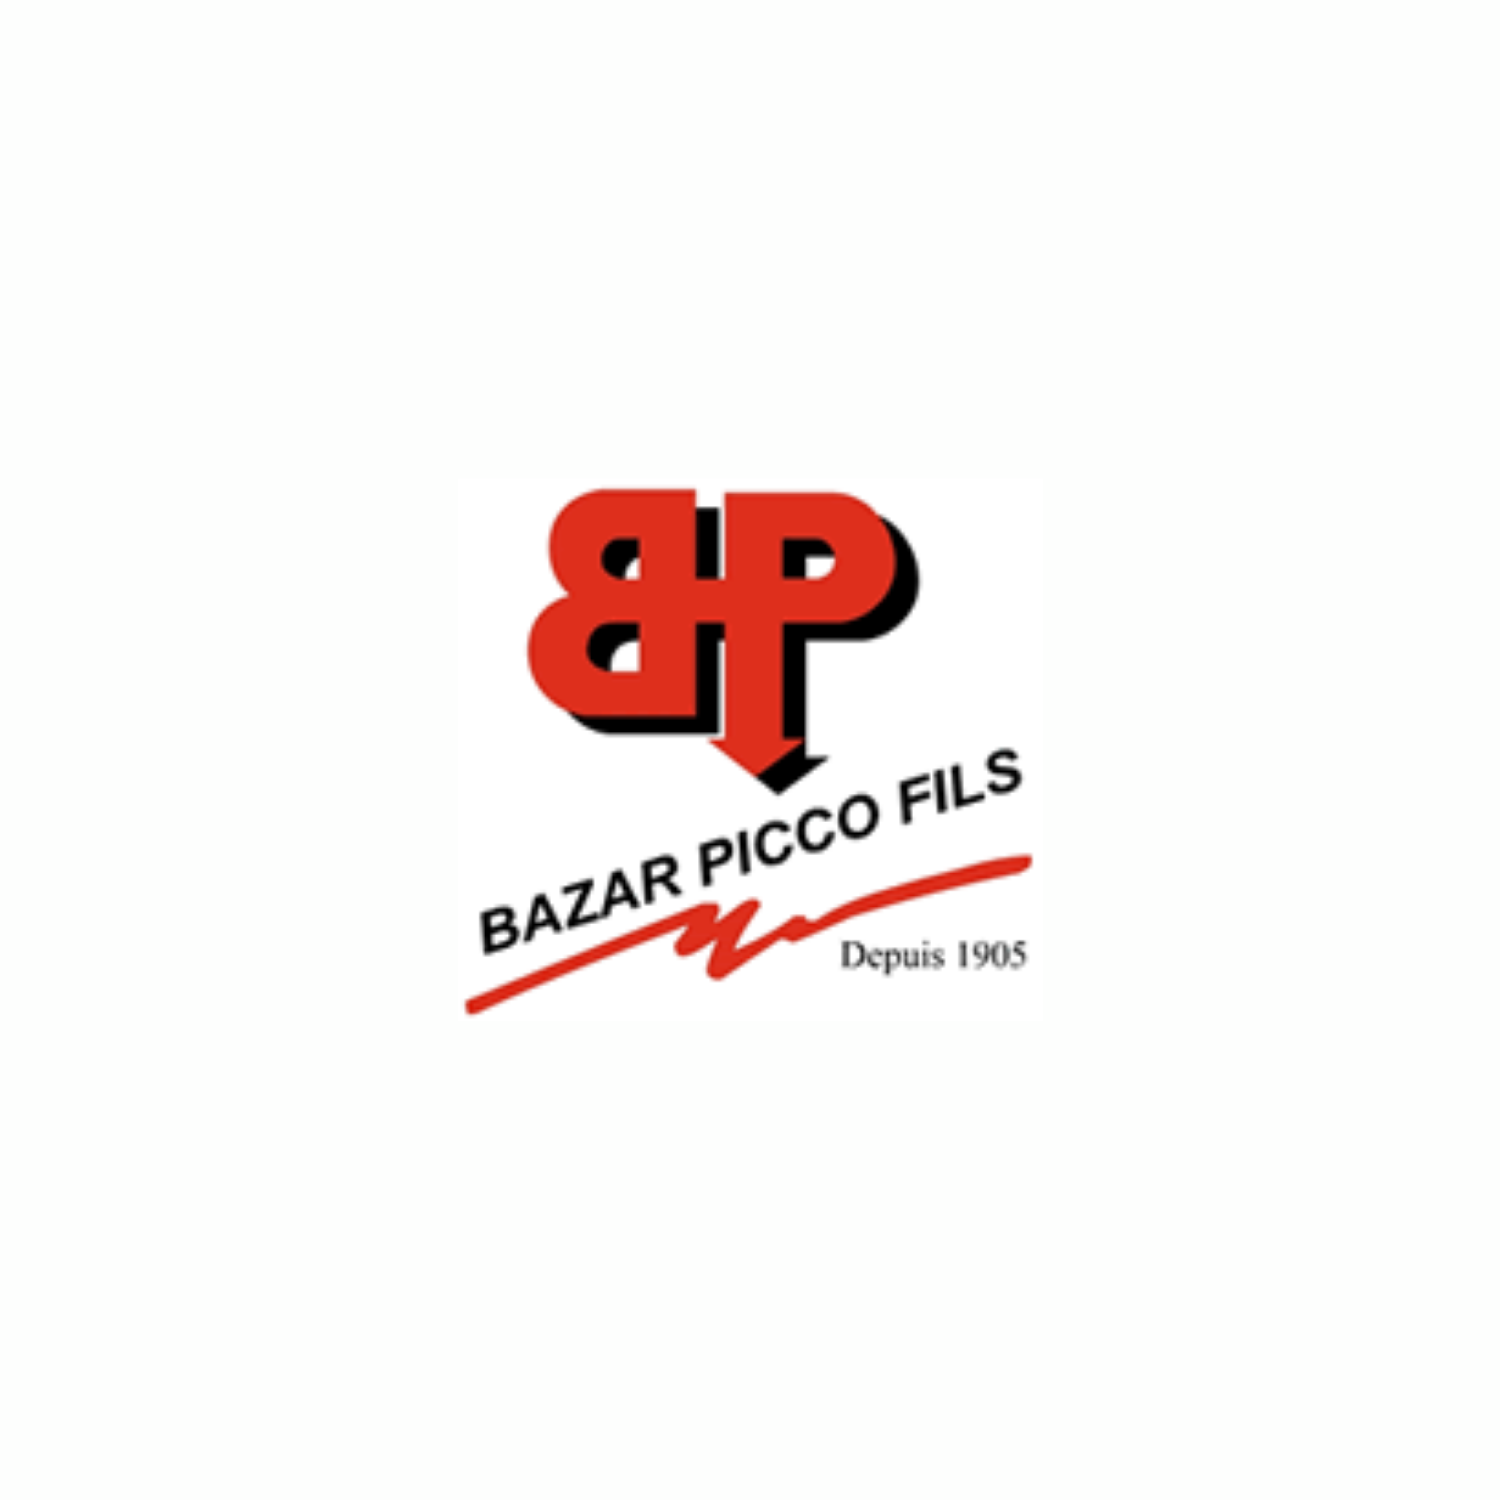 bazar-pico-carloapp-commercant-monaco-provisions